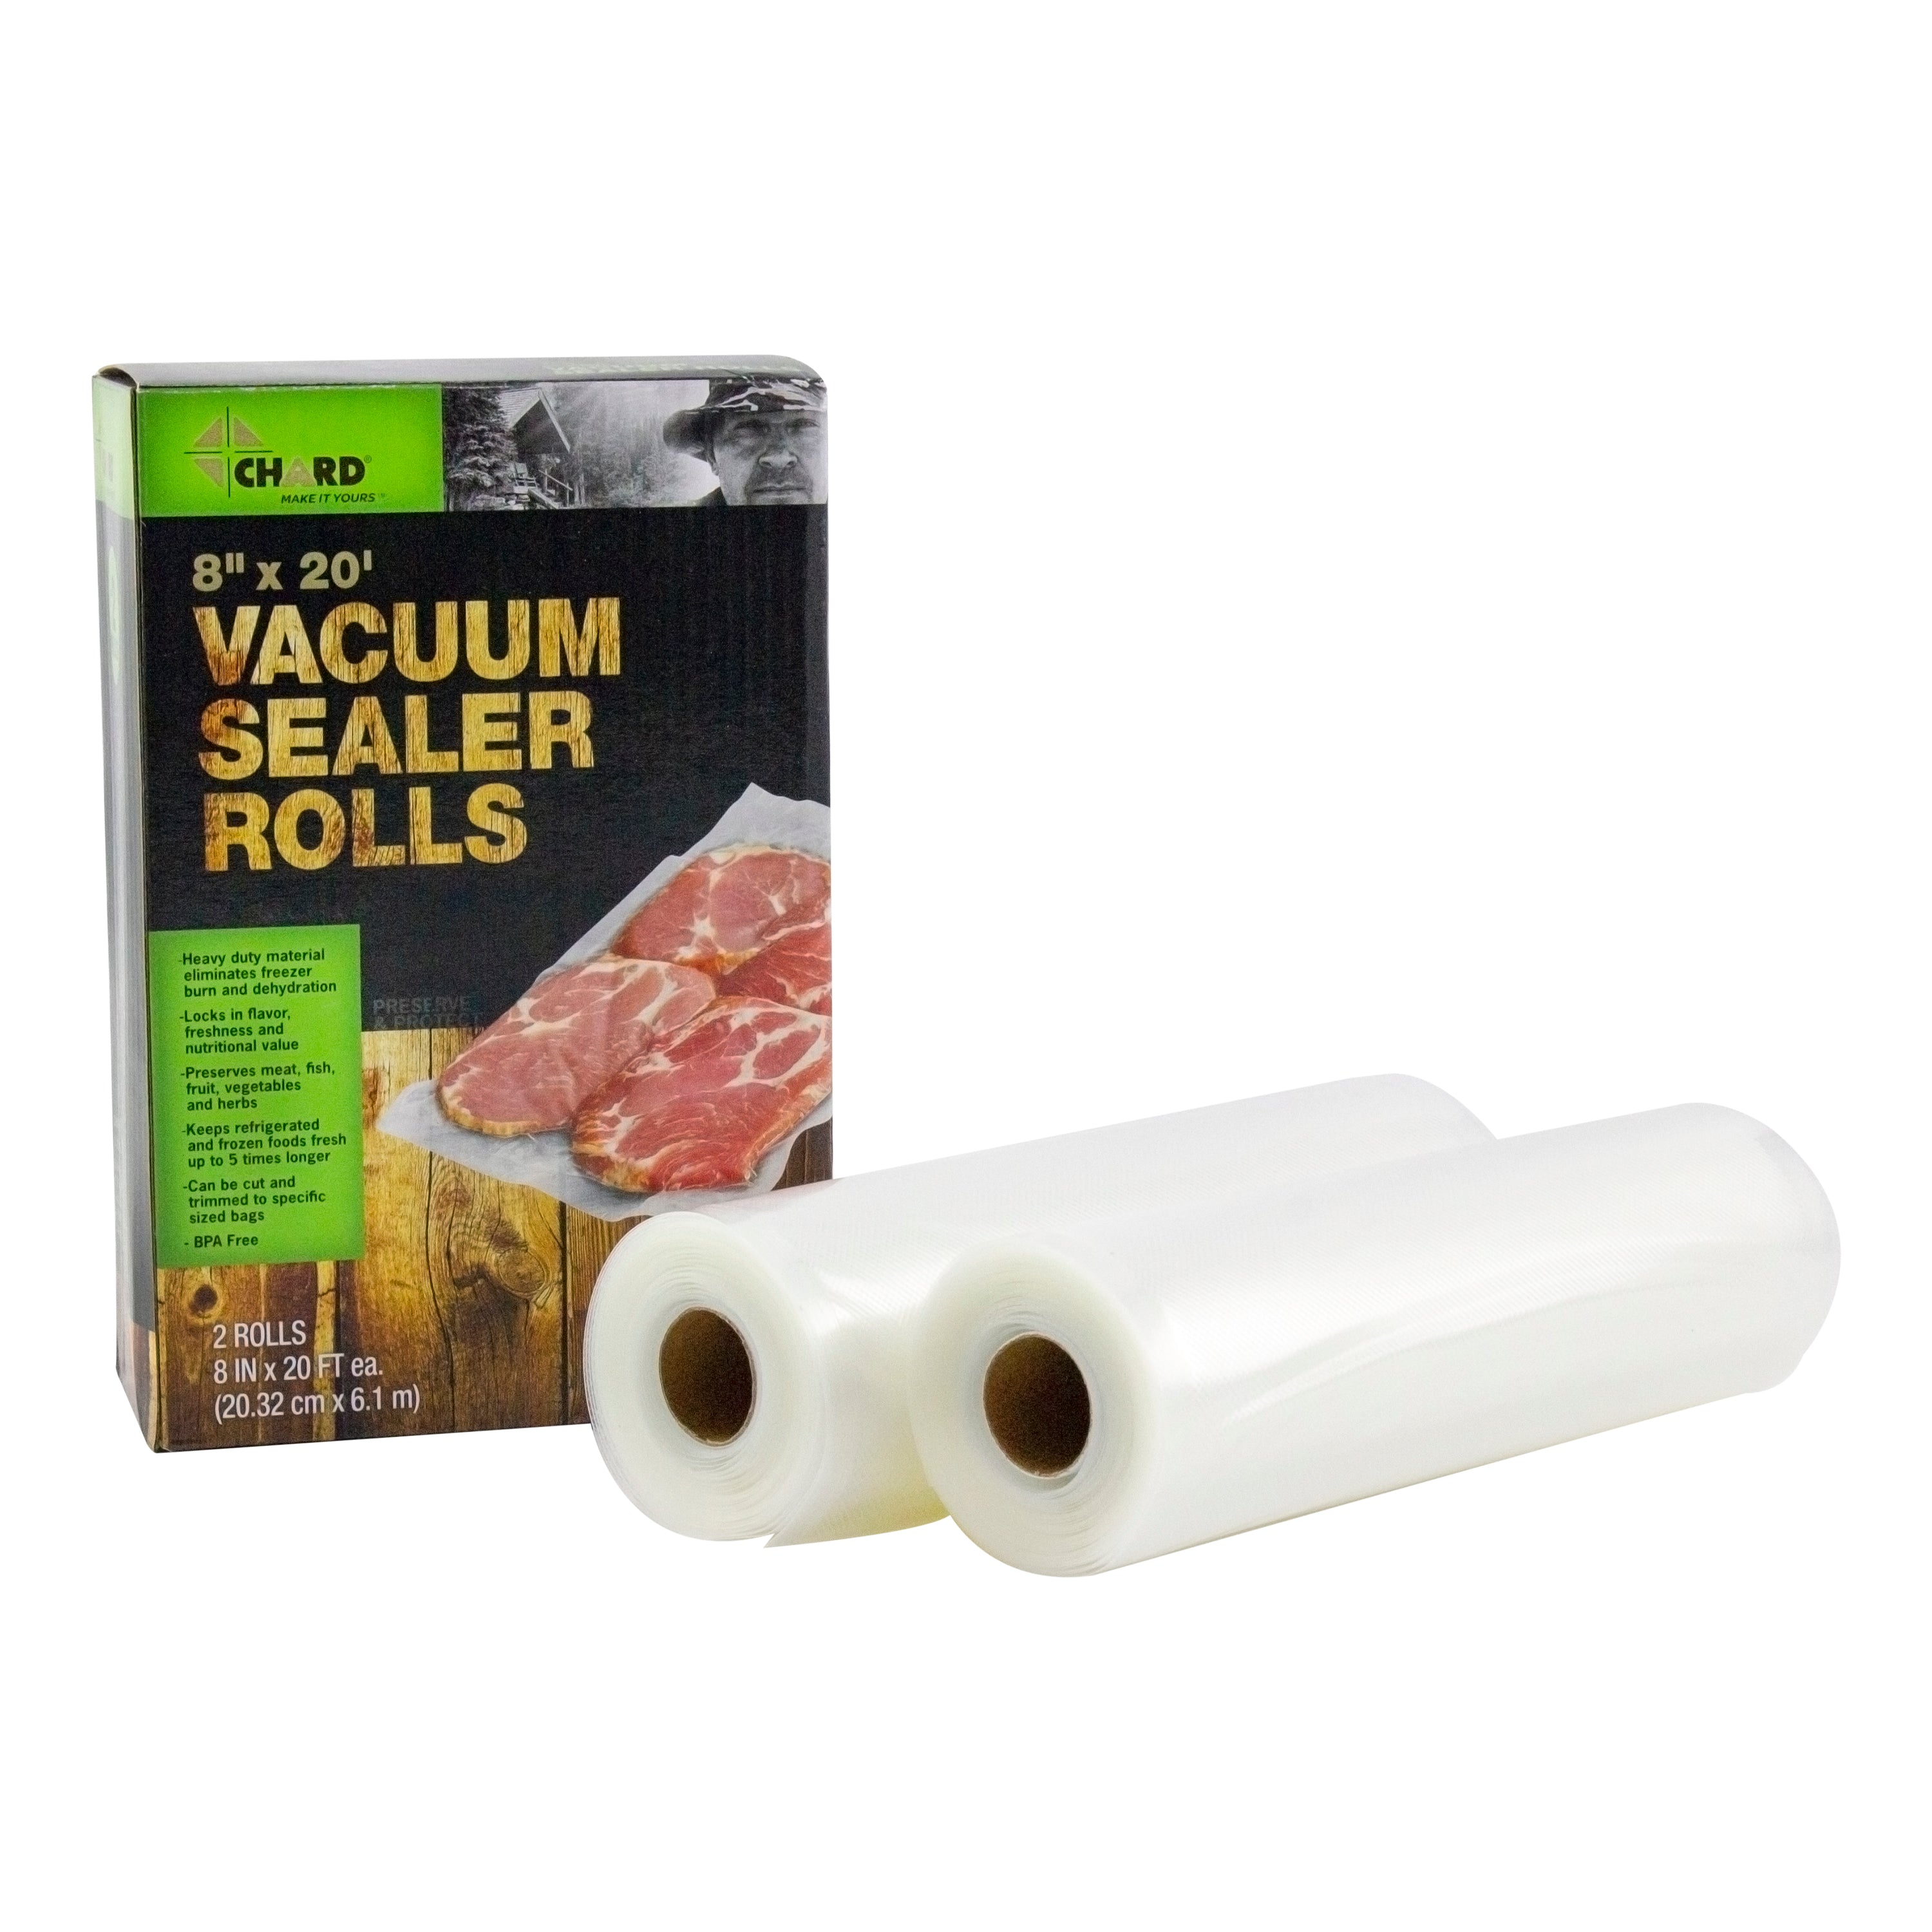 8 x 20' Vacuum Sealer Rolls, 2 Pack